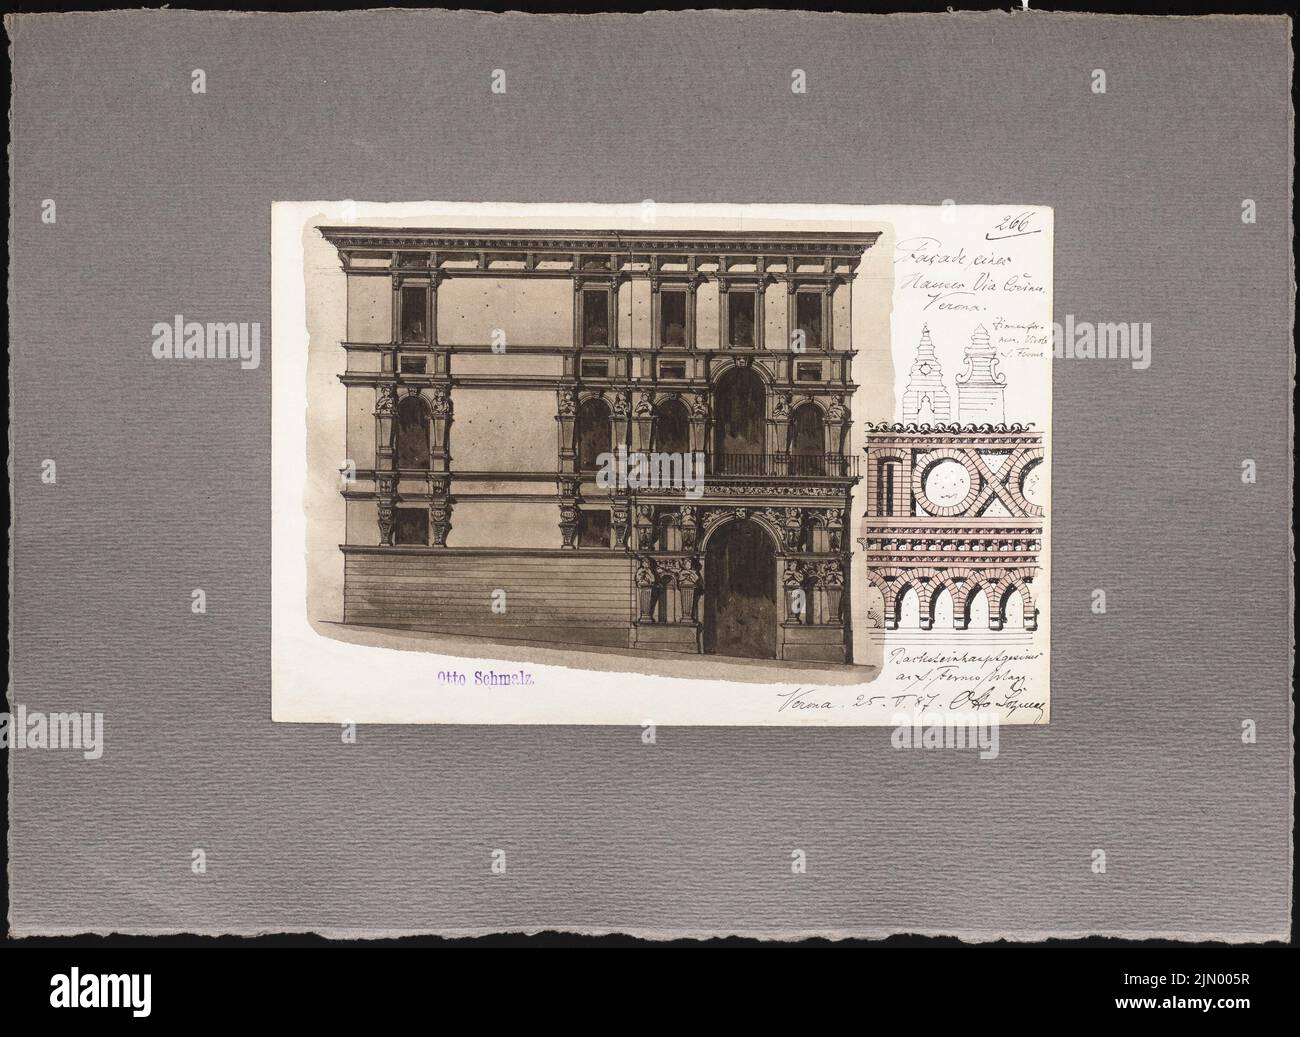 Schmalz Otto (1861-1915), croquis de voyage de l'Italie (25.05.1887): Vérone: Maison dans la via Cosina (Voir détails), S. Fermo (détail cornice). Tuche aquarelle sur papier, 31 x 42,5 cm (y compris les bords de numérisation) Banque D'Images